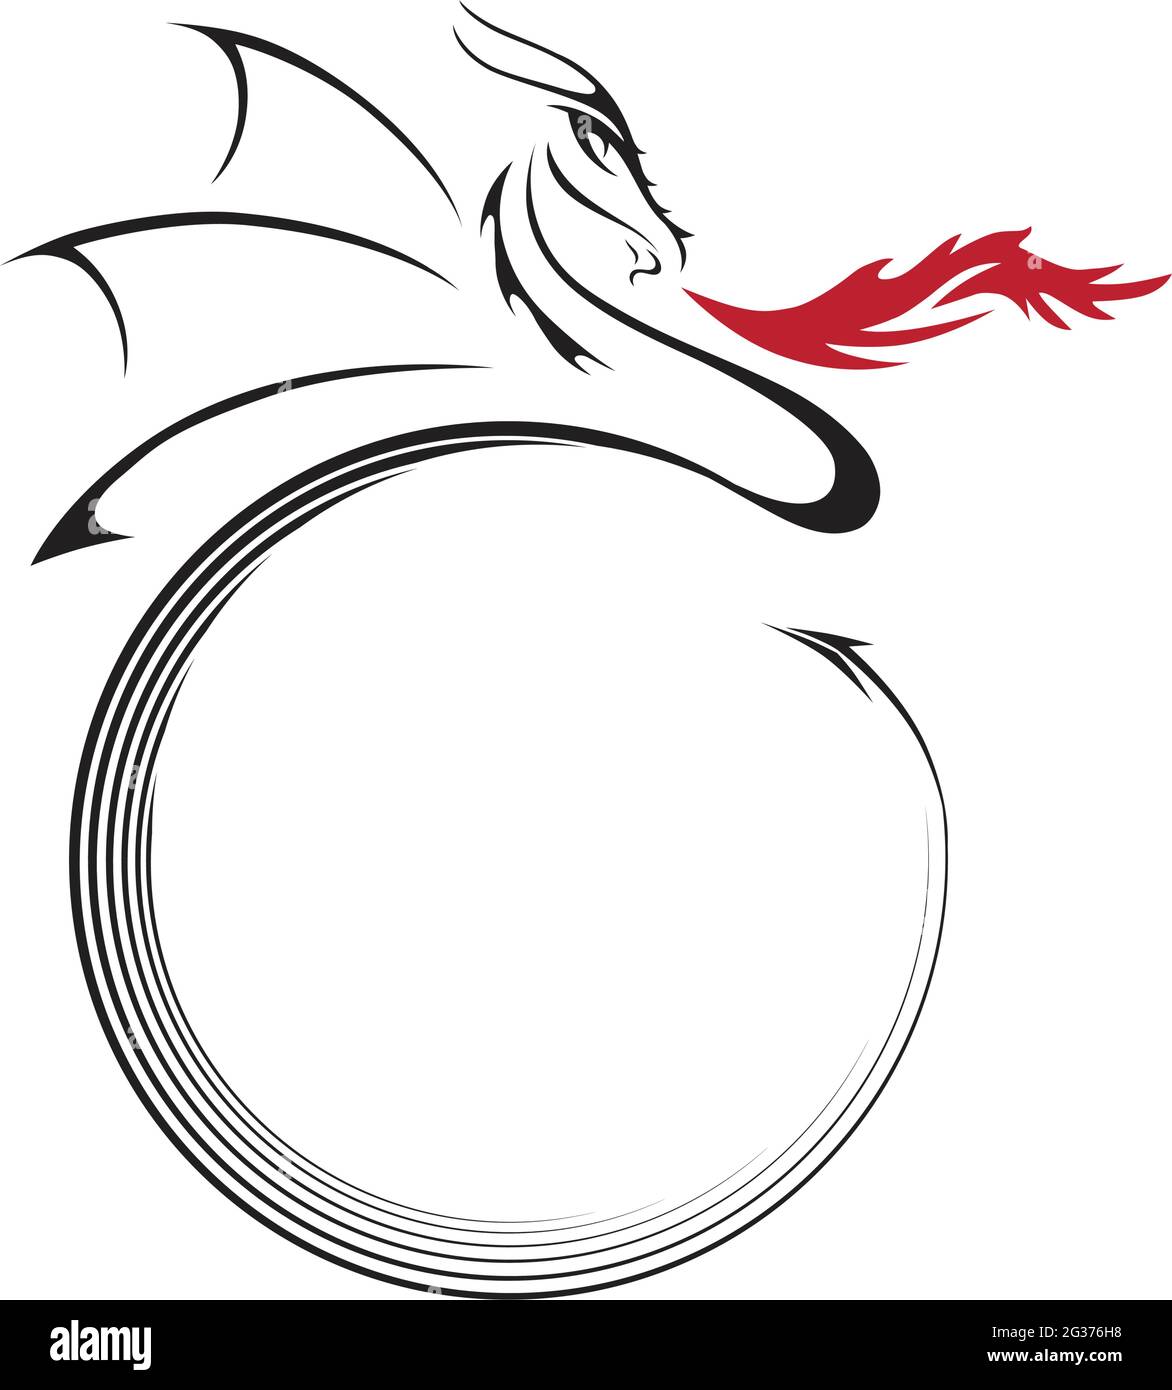 illustrazione del drago stilizzata Illustrazione Vettoriale